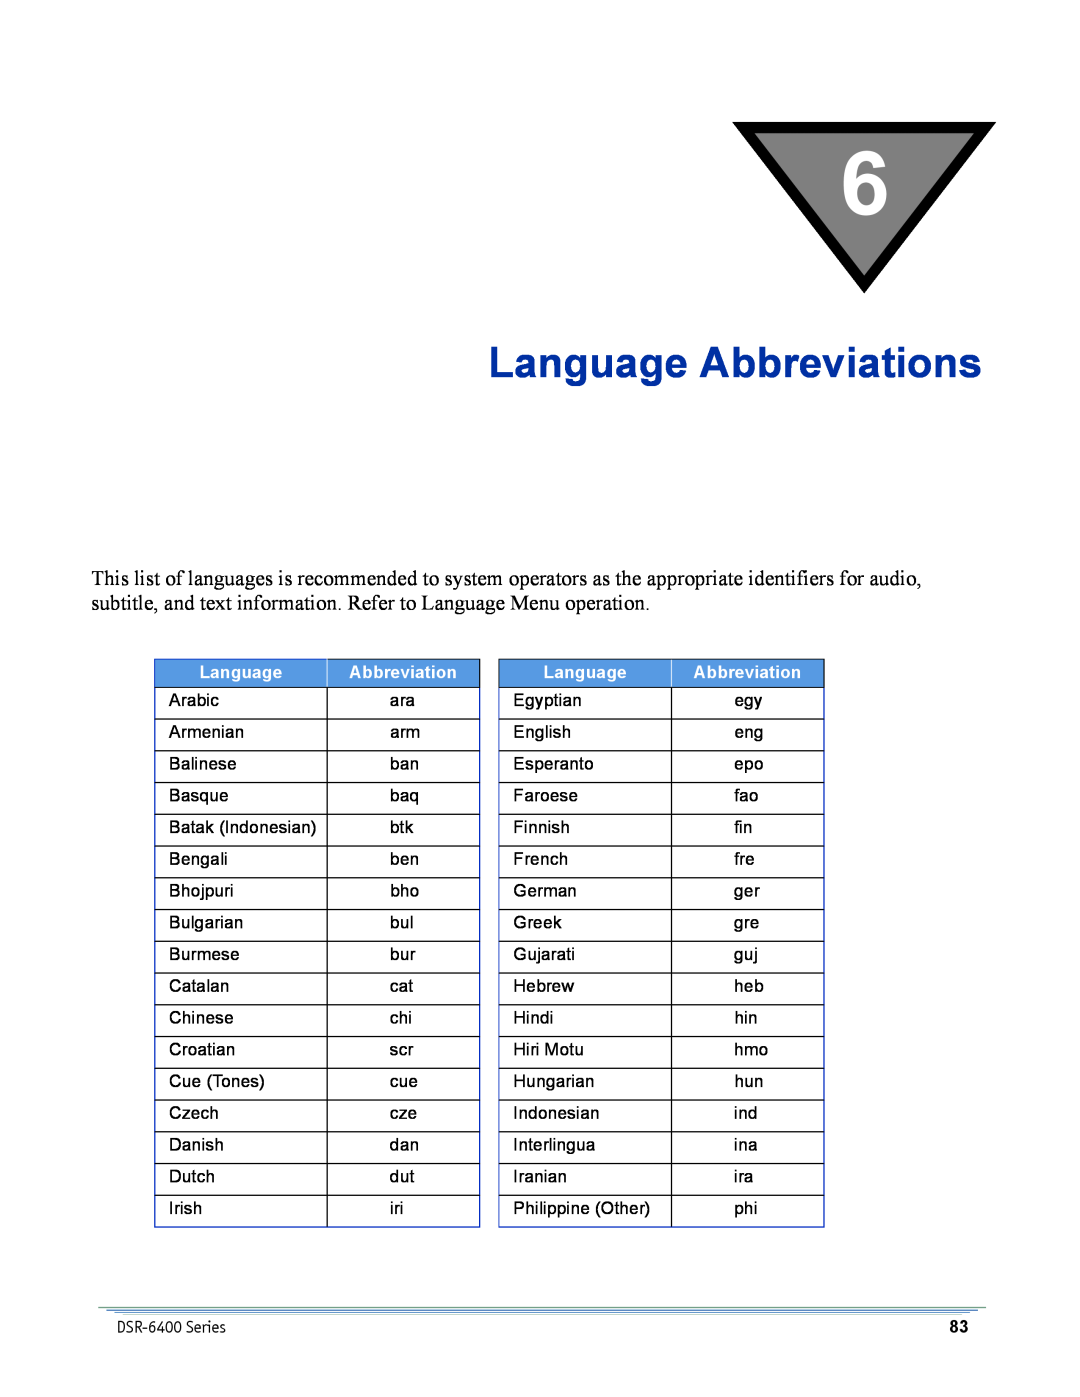 Motorola DSR-6400 manual Language Abbreviations 